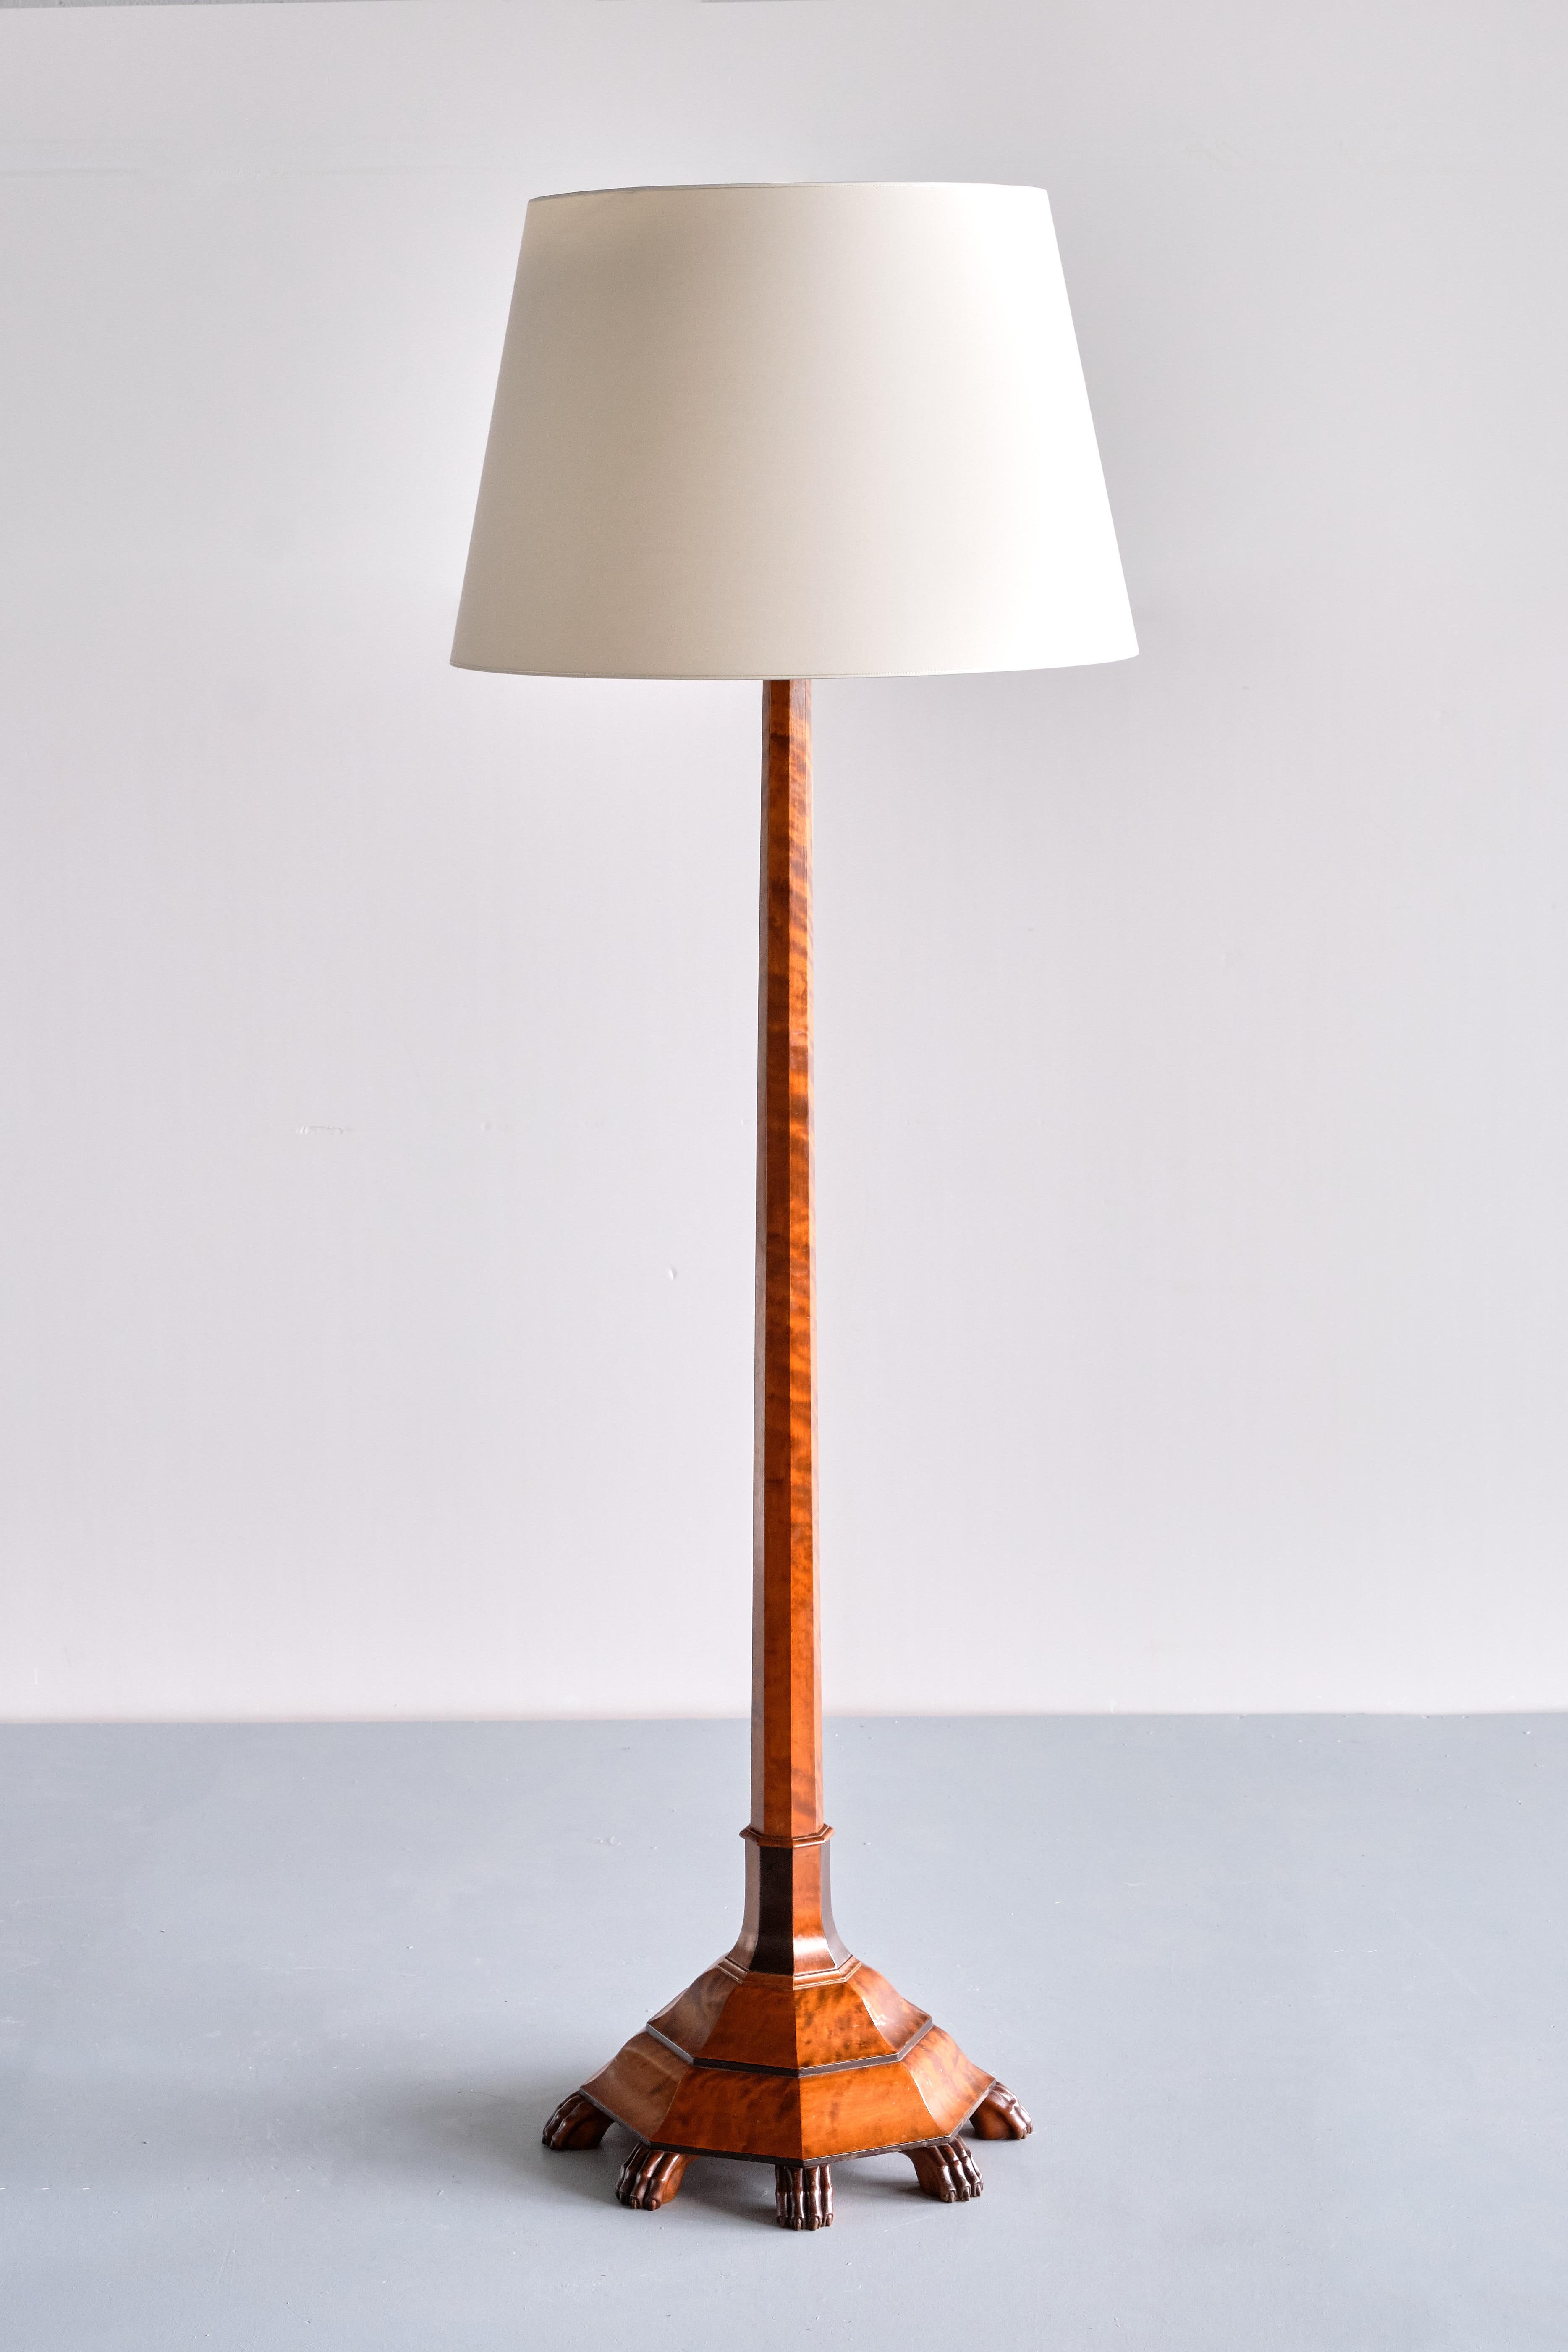 Ce superbe lampadaire a été produit en Suède au milieu des années 1920. Le design élégant est exemplaire du style Grace suédois avec sa combinaison du motif architectural octogonal et des détails (néo)classiques. Dans les années 1920, une jeune et